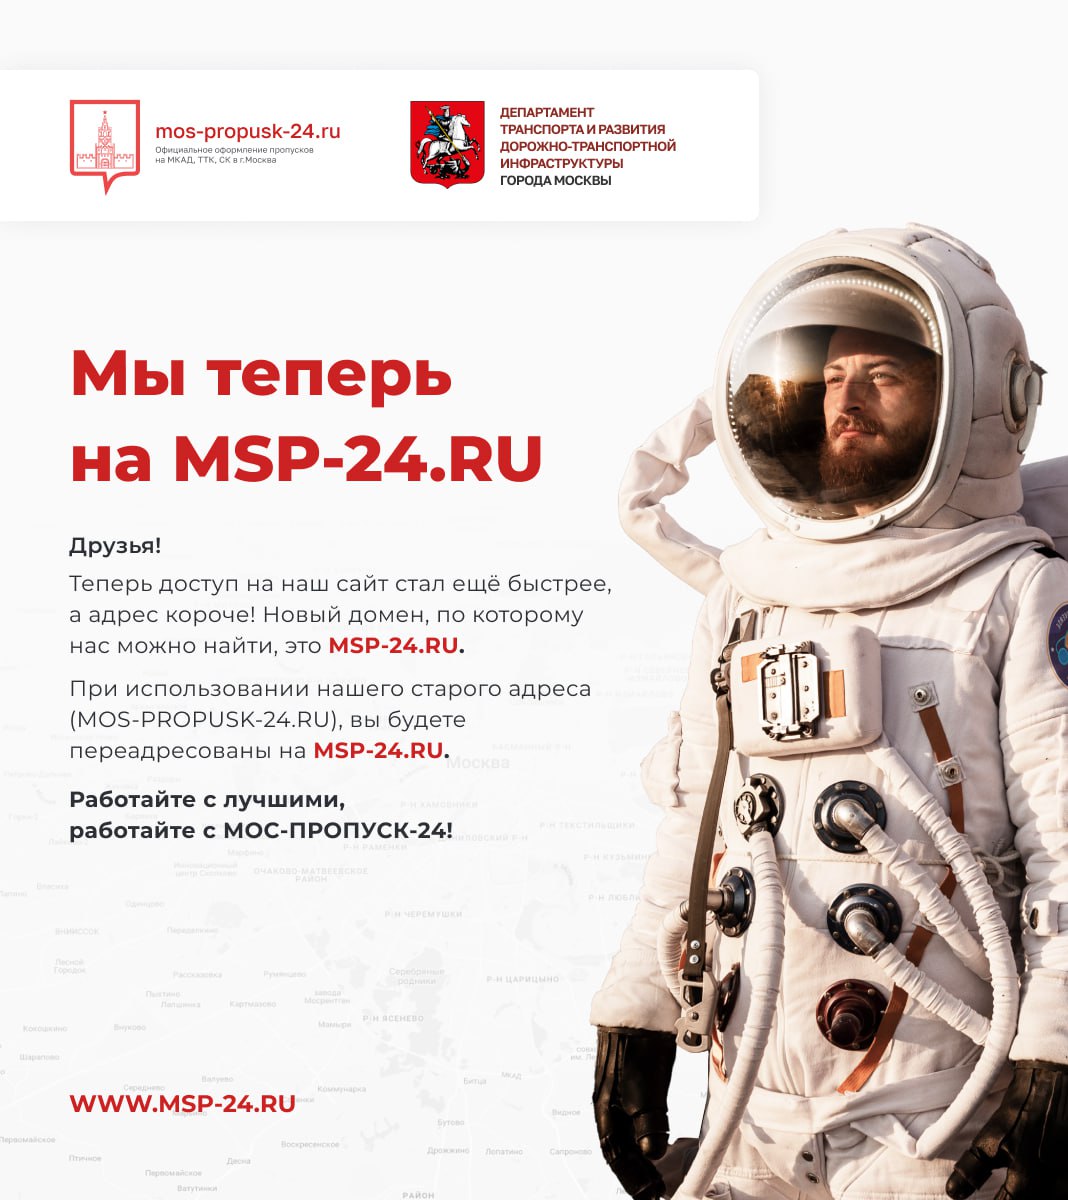 Мы теперь на MSP-24.RU